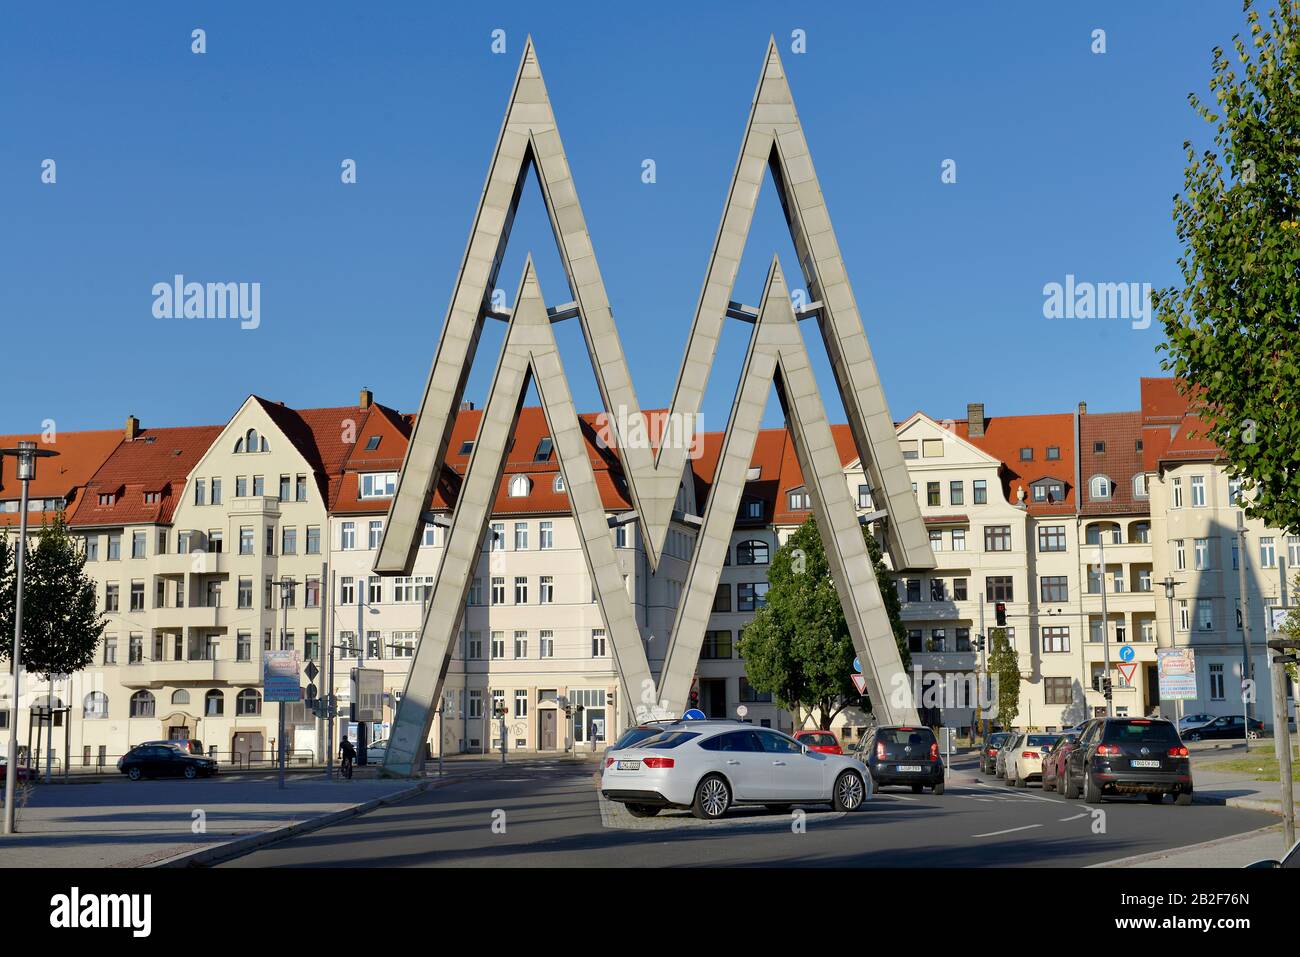 Messesymbol, Alte Messe, Prager Strasse, Leipzig, Sachsen, Deutschland Stock Photo